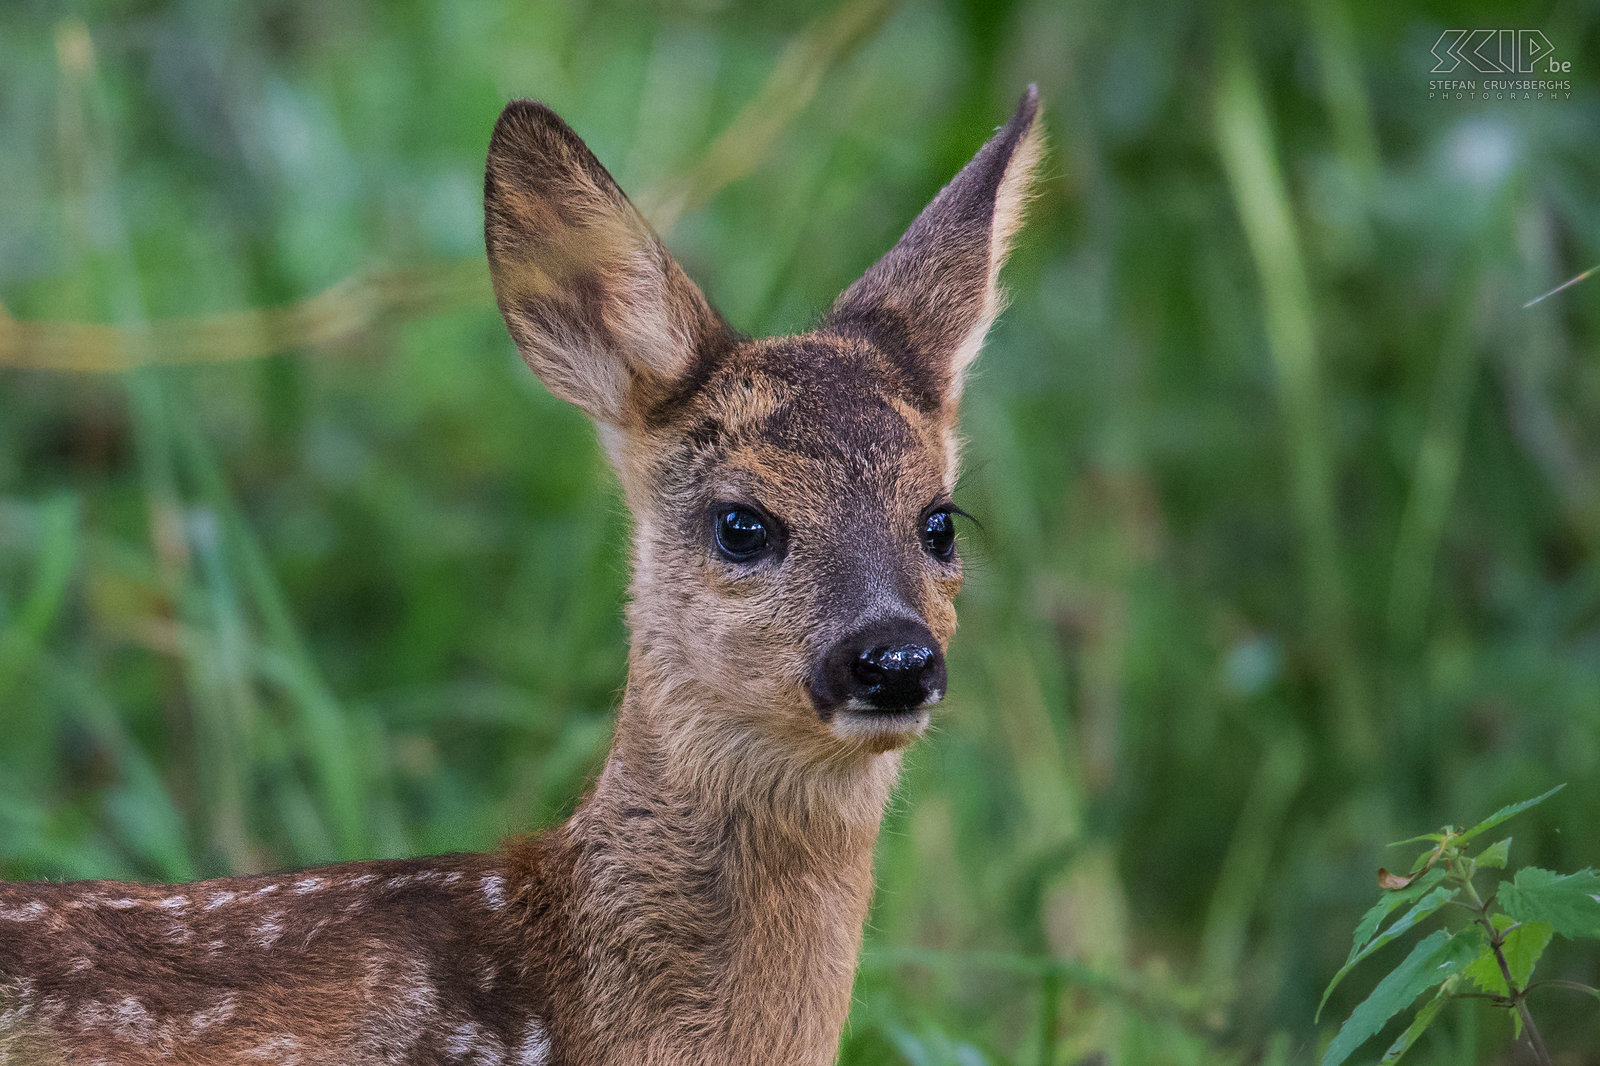 Closeup jonge ree Een reekalf verstopt in het bos. De Disney klassieker Bambi werd gebaseerd op een jonge ree omdat ze schattige witte vlekken hebben op hun pels. Stefan Cruysberghs